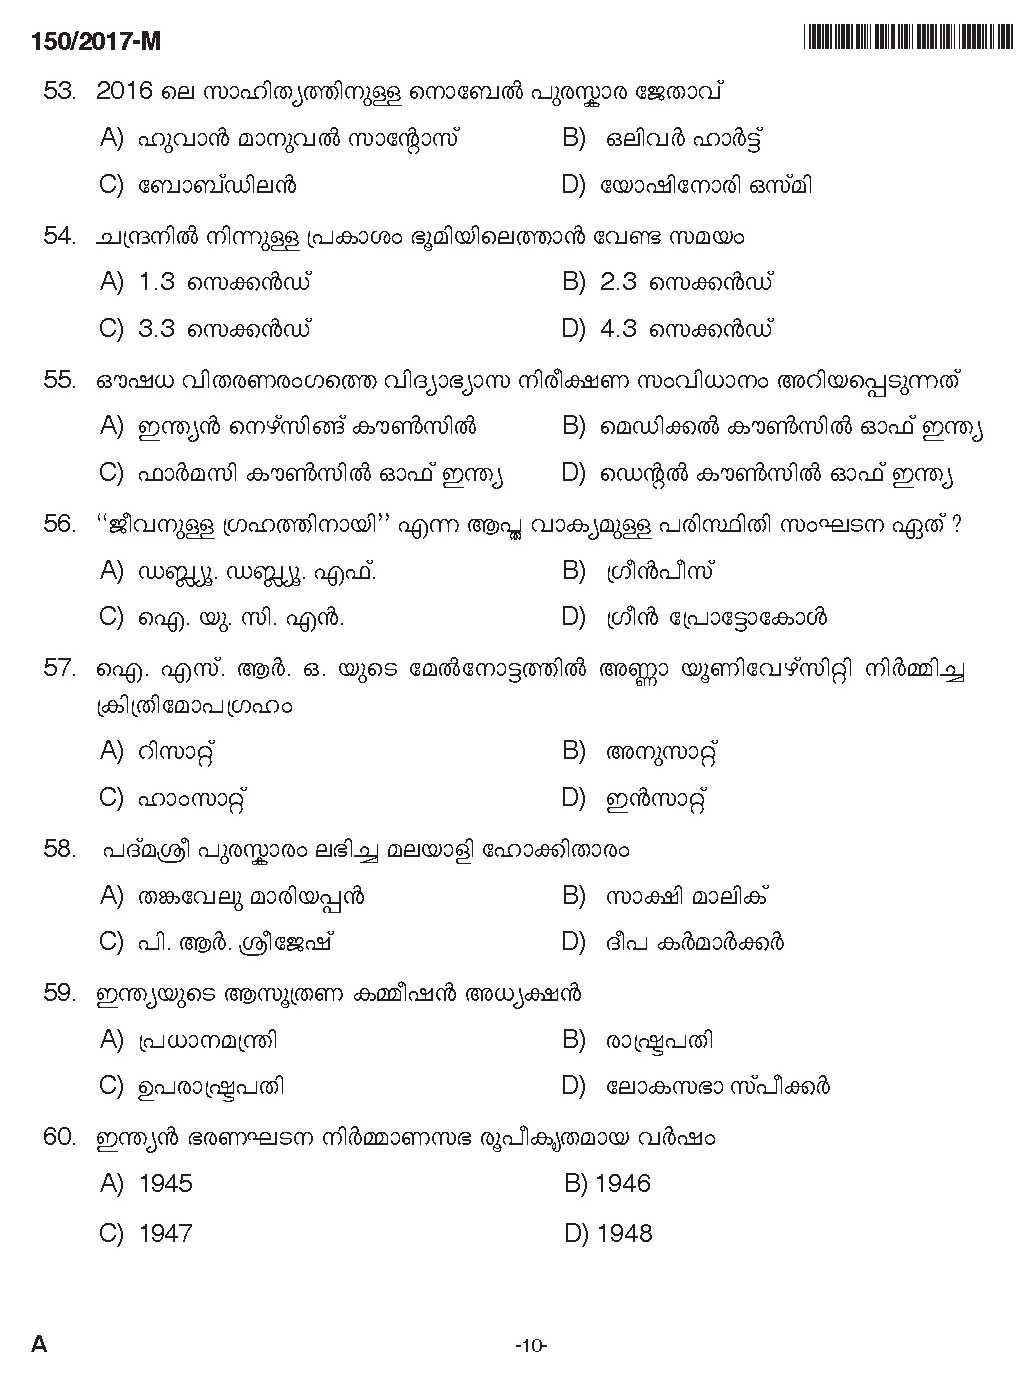 Kerala PSC Boat Deckman Exam Question Code 1502017 M 9